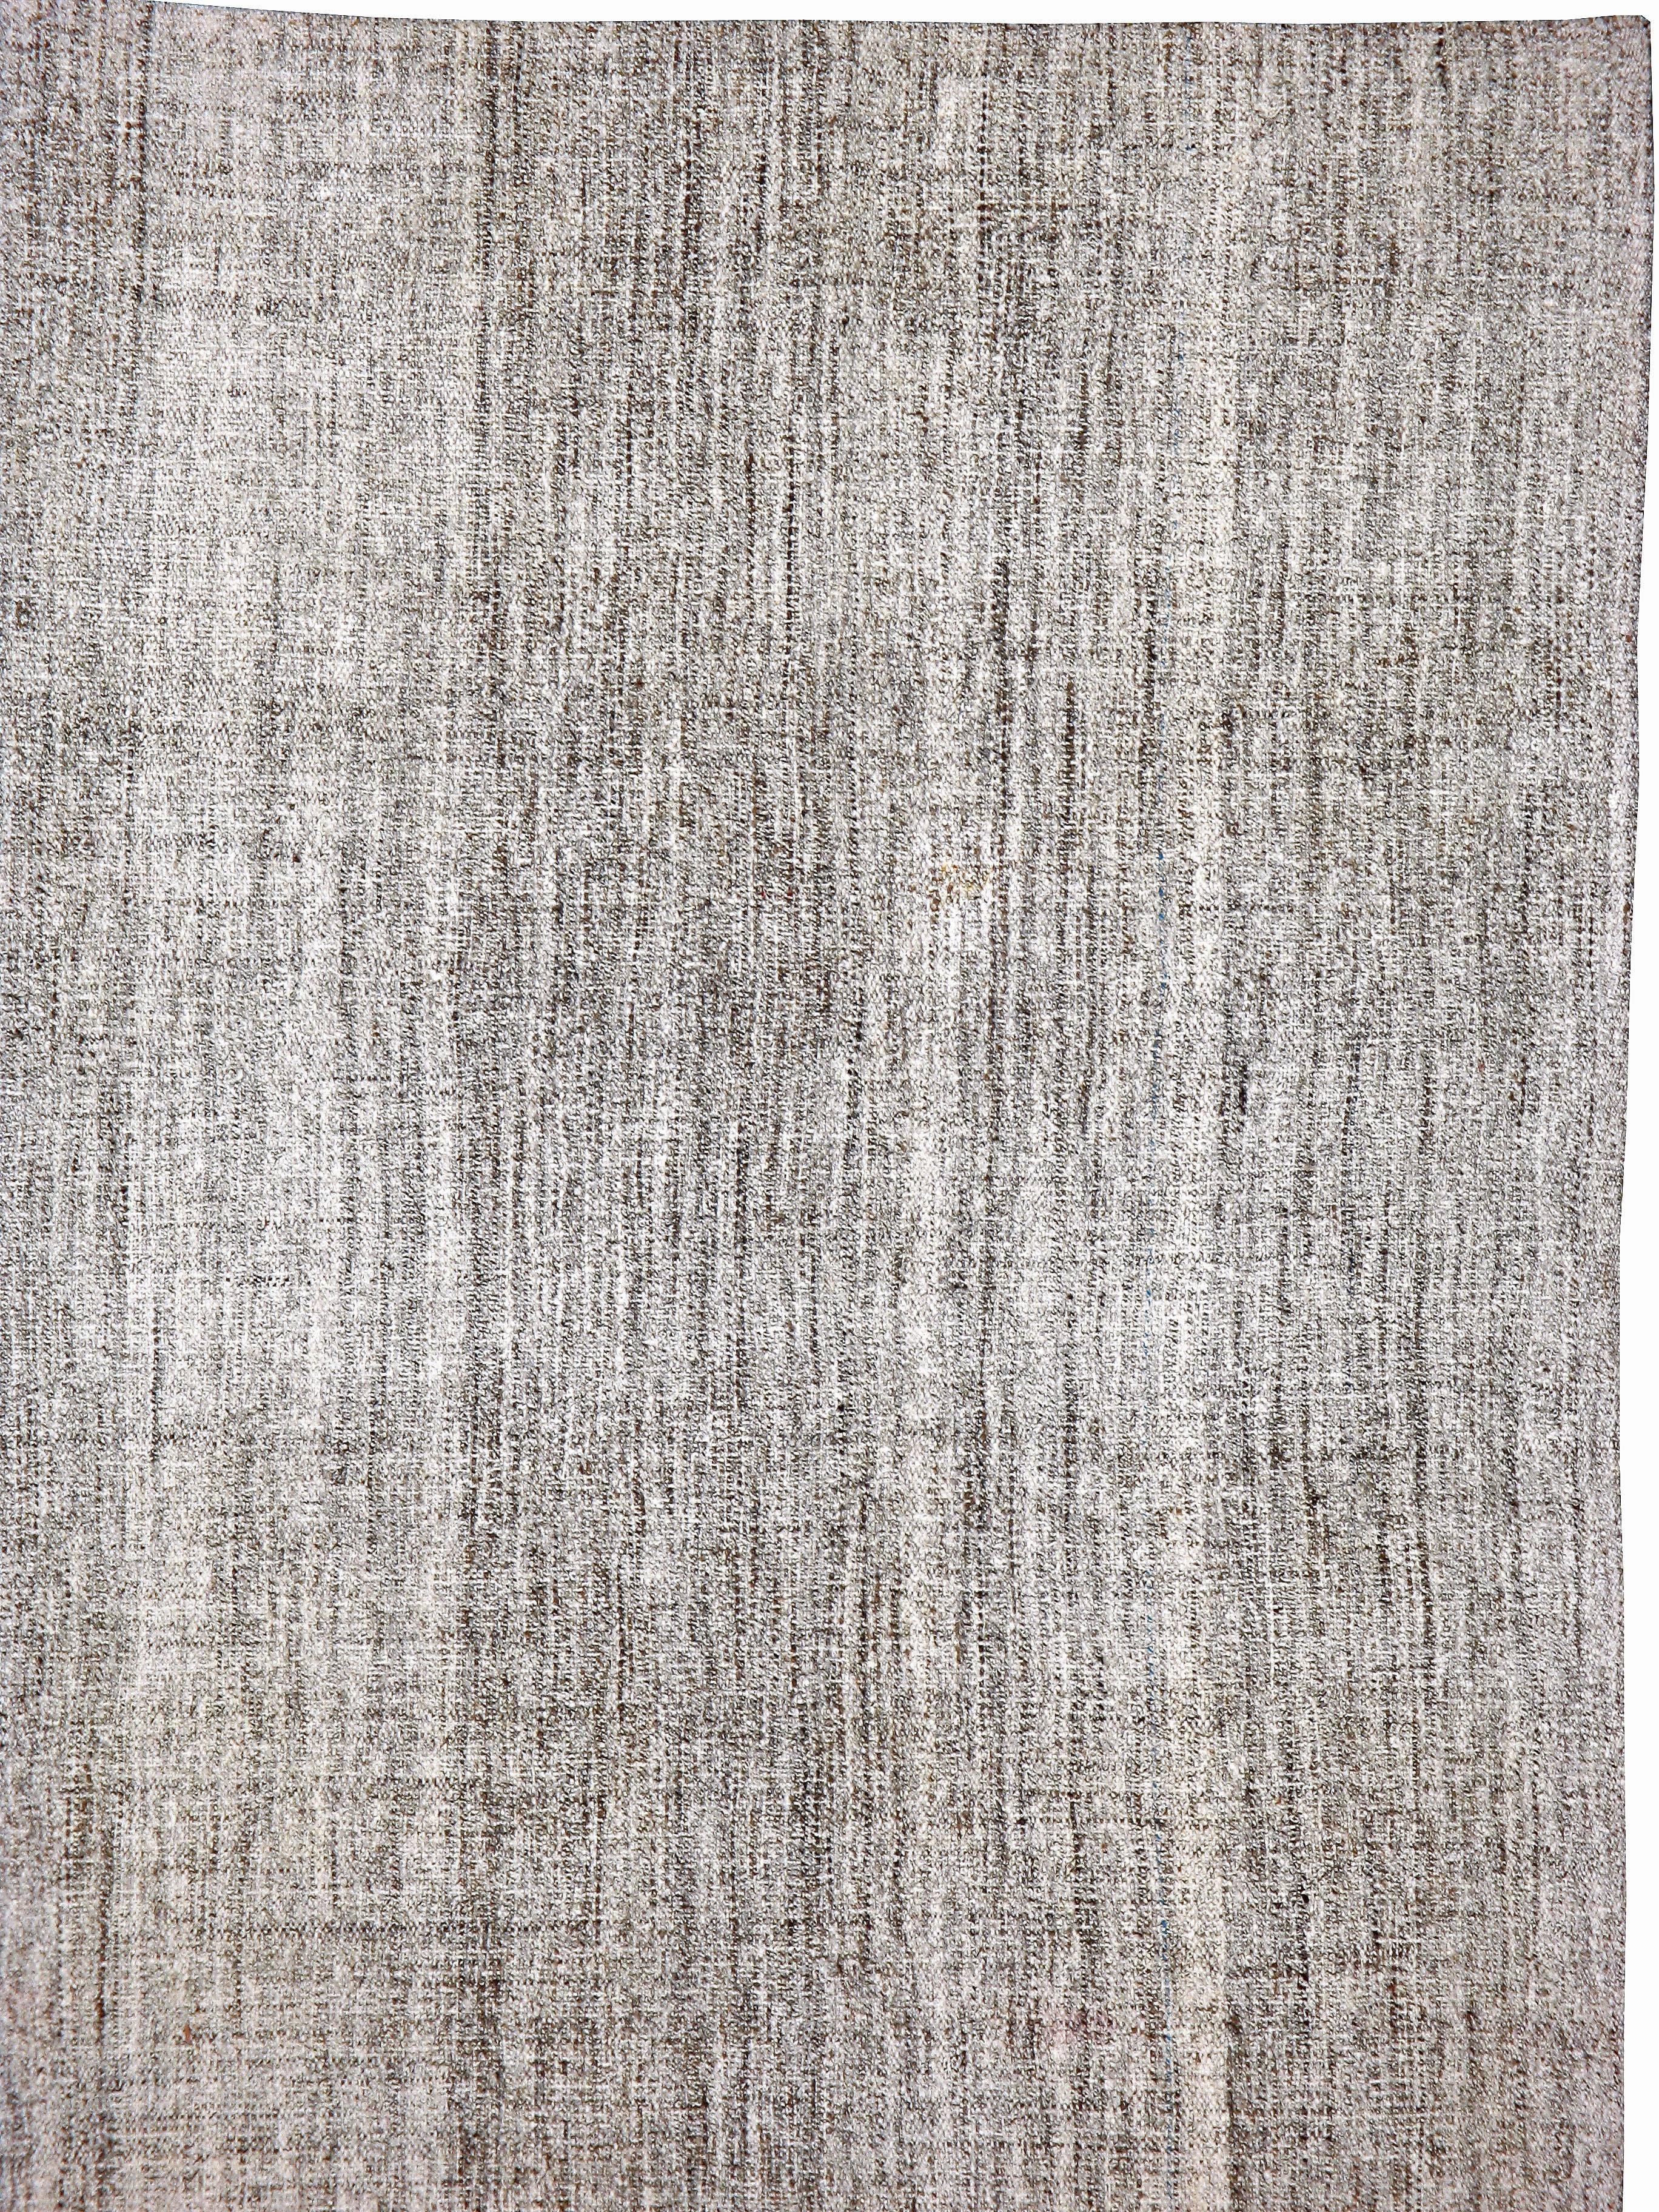 Ein alter türkischer flachgewebter Kelim-Teppich aus der Mitte des 20. Natürliche, ungefärbte Wolle mit einem schönen Salz- und Pfeffermuster.